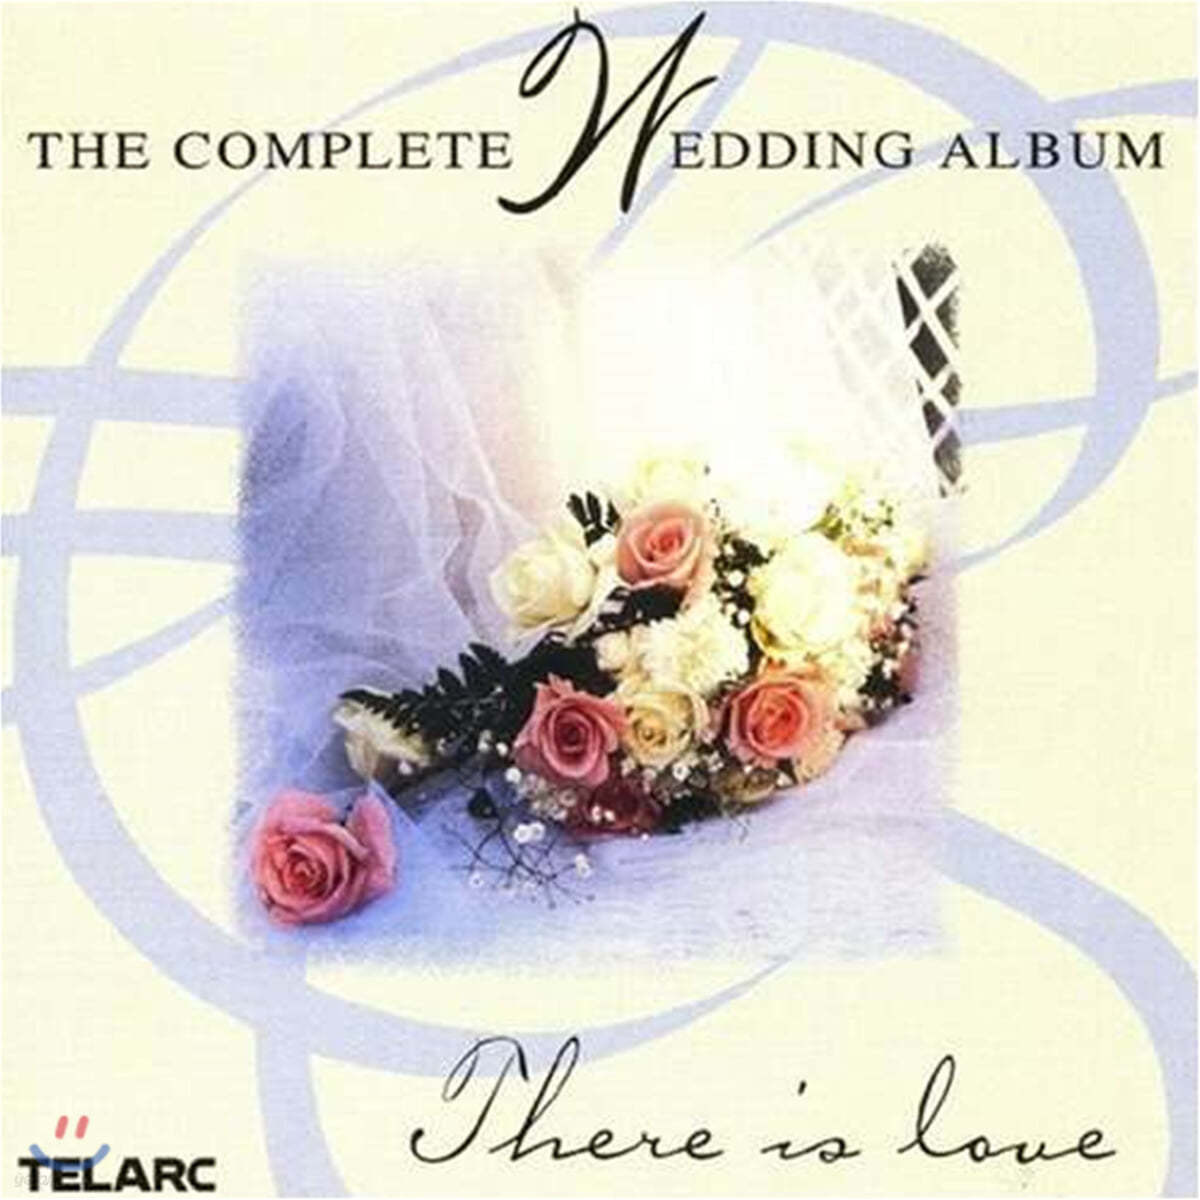 디어 이즈 러브 - 웨딩 앨범 전곡집 (The Complete Wedding Album)